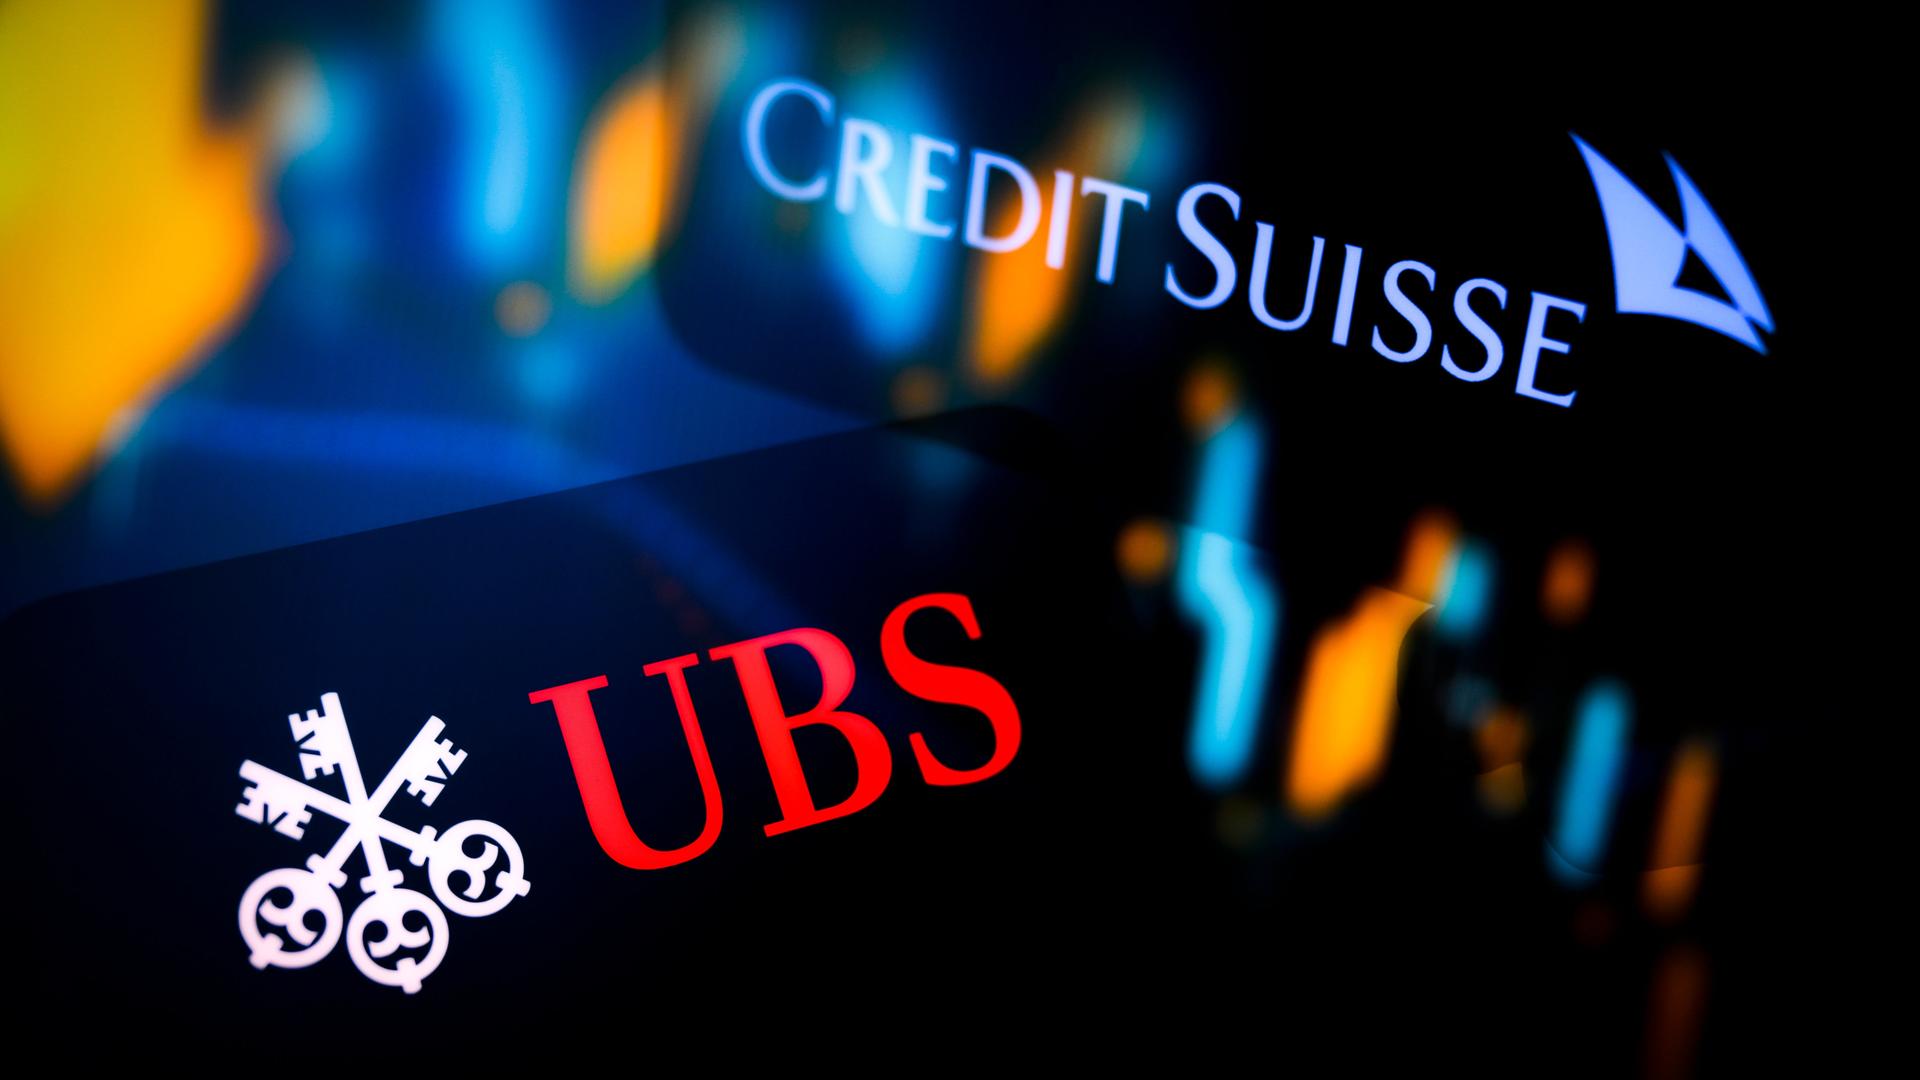 Leuchtende Logos der Banken UBS und Credit Suisse auf dunklem Hintergrund